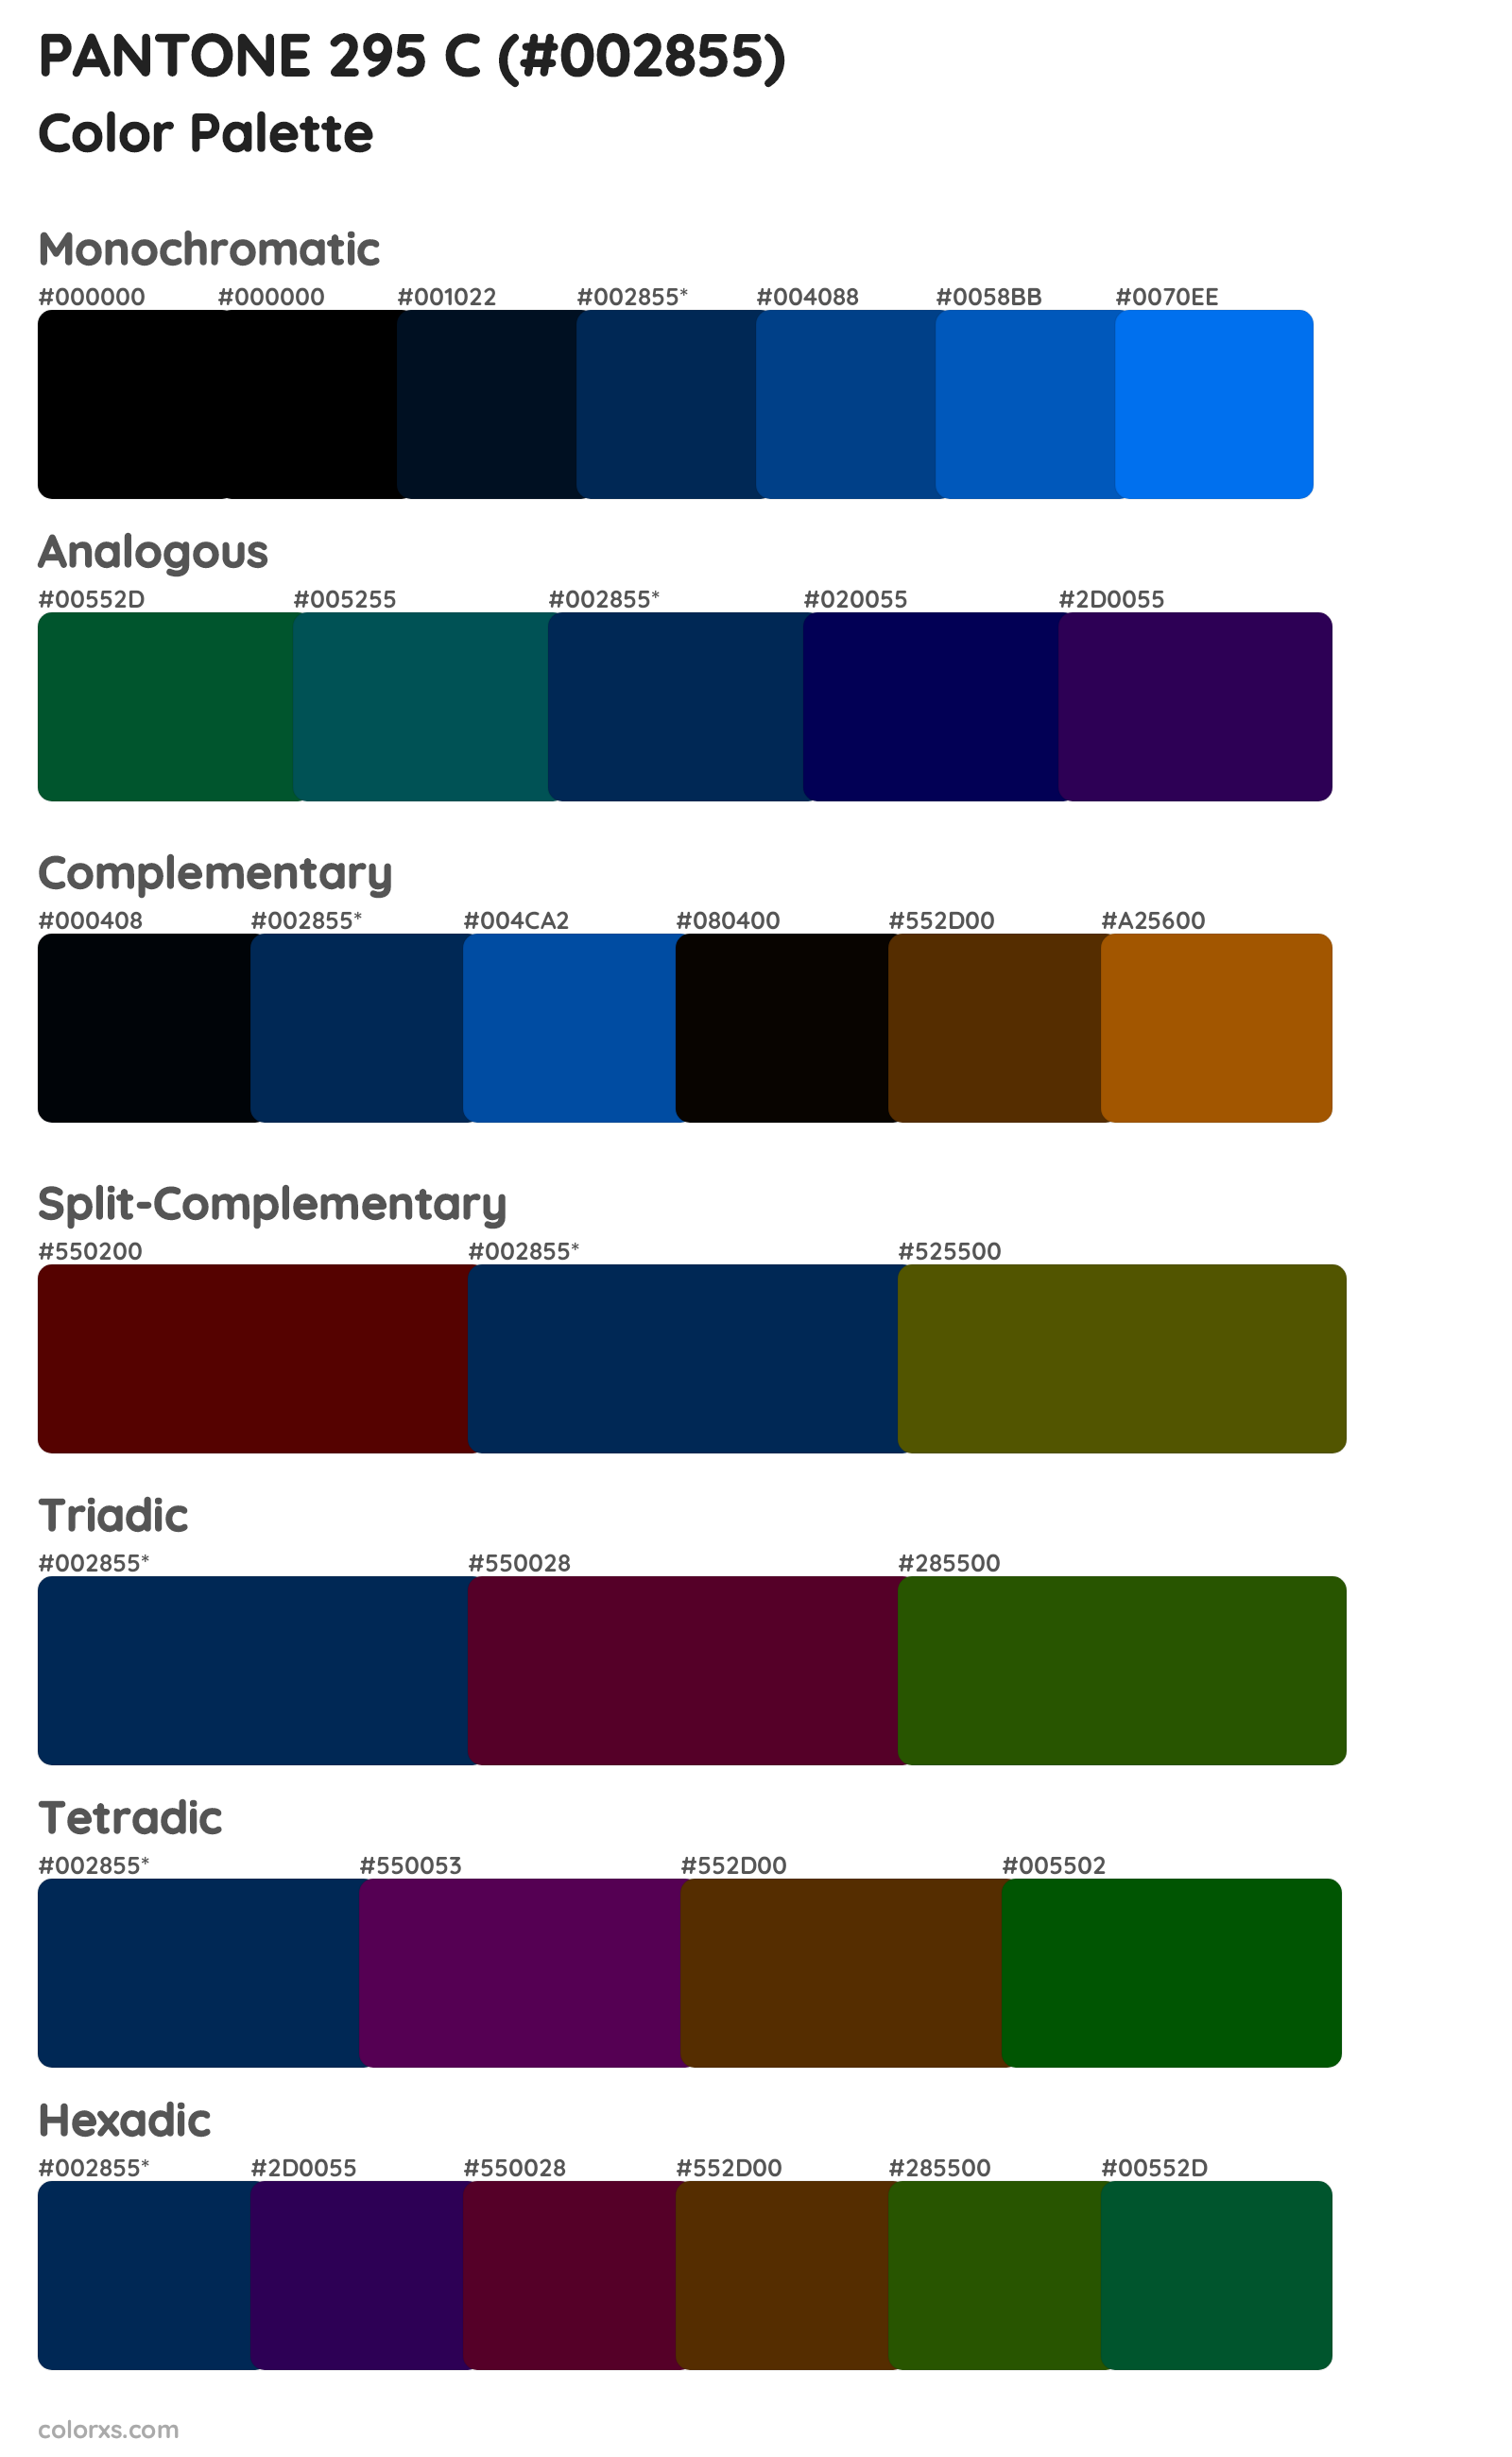 PANTONE 295 C Color Scheme Palettes